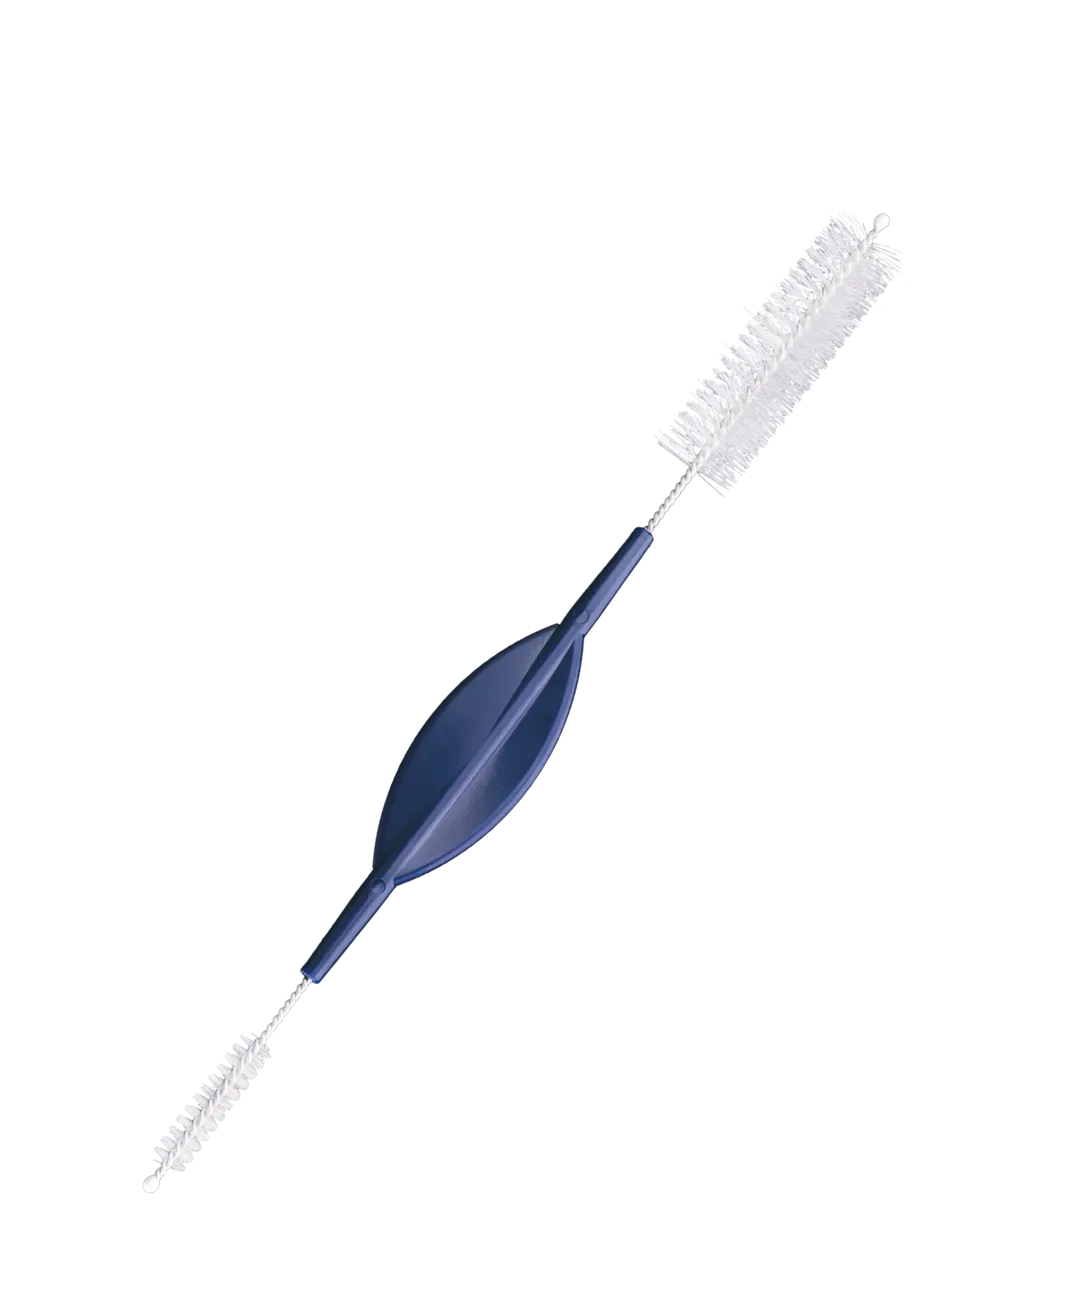 Single-Use Endoscopic Cleaning Brushes